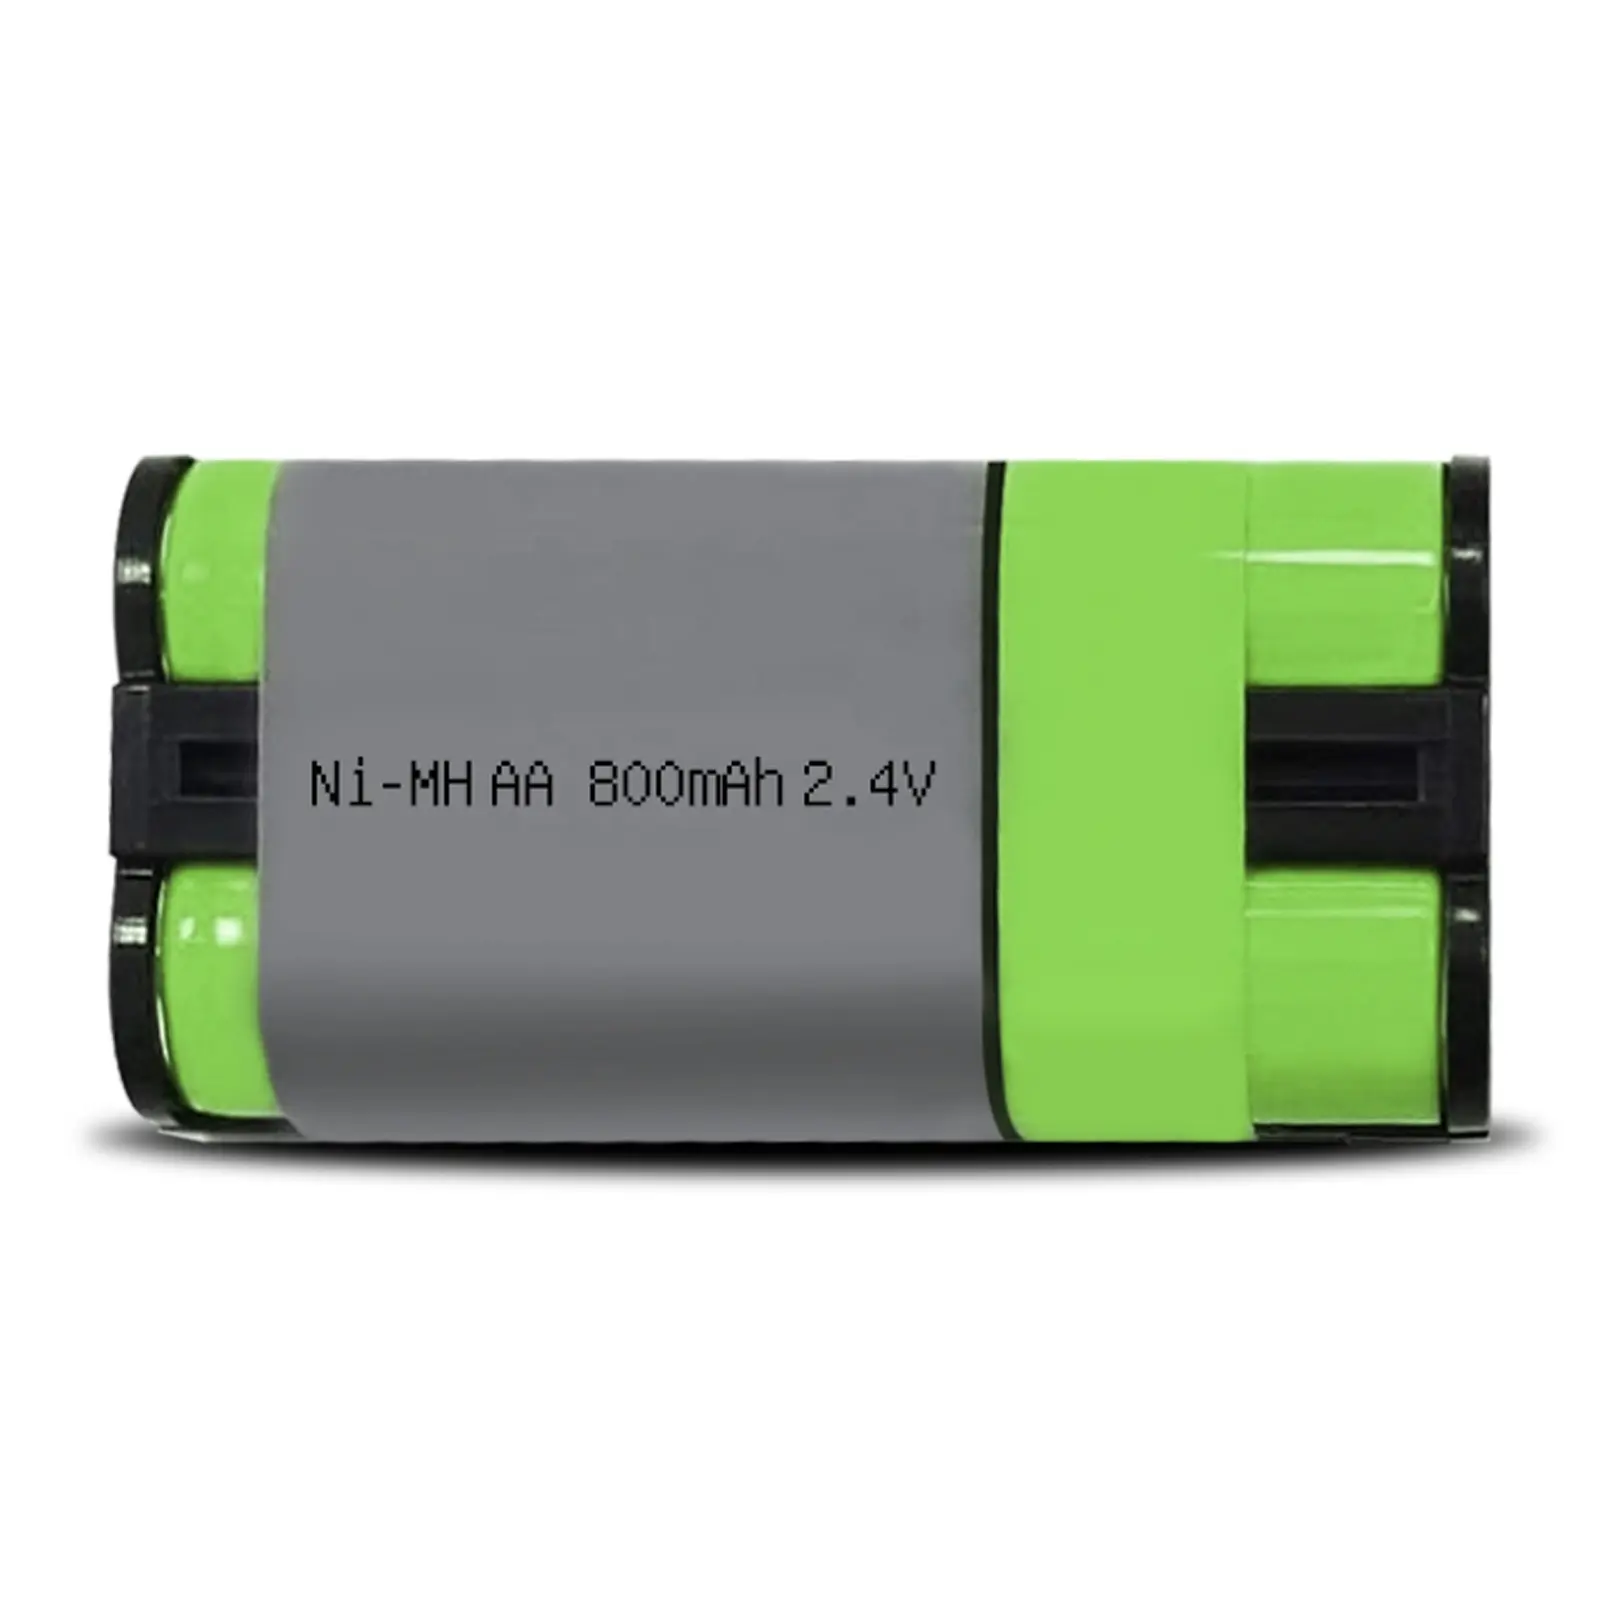 JINTION NIMH AAA 800MAH 2.4V nimh रिचार्जेबल बैटरी सोनी MDRRF995RK WHRF400 RF895RK वायरलेस हेडफोन के लिए ni-mh बैटरी